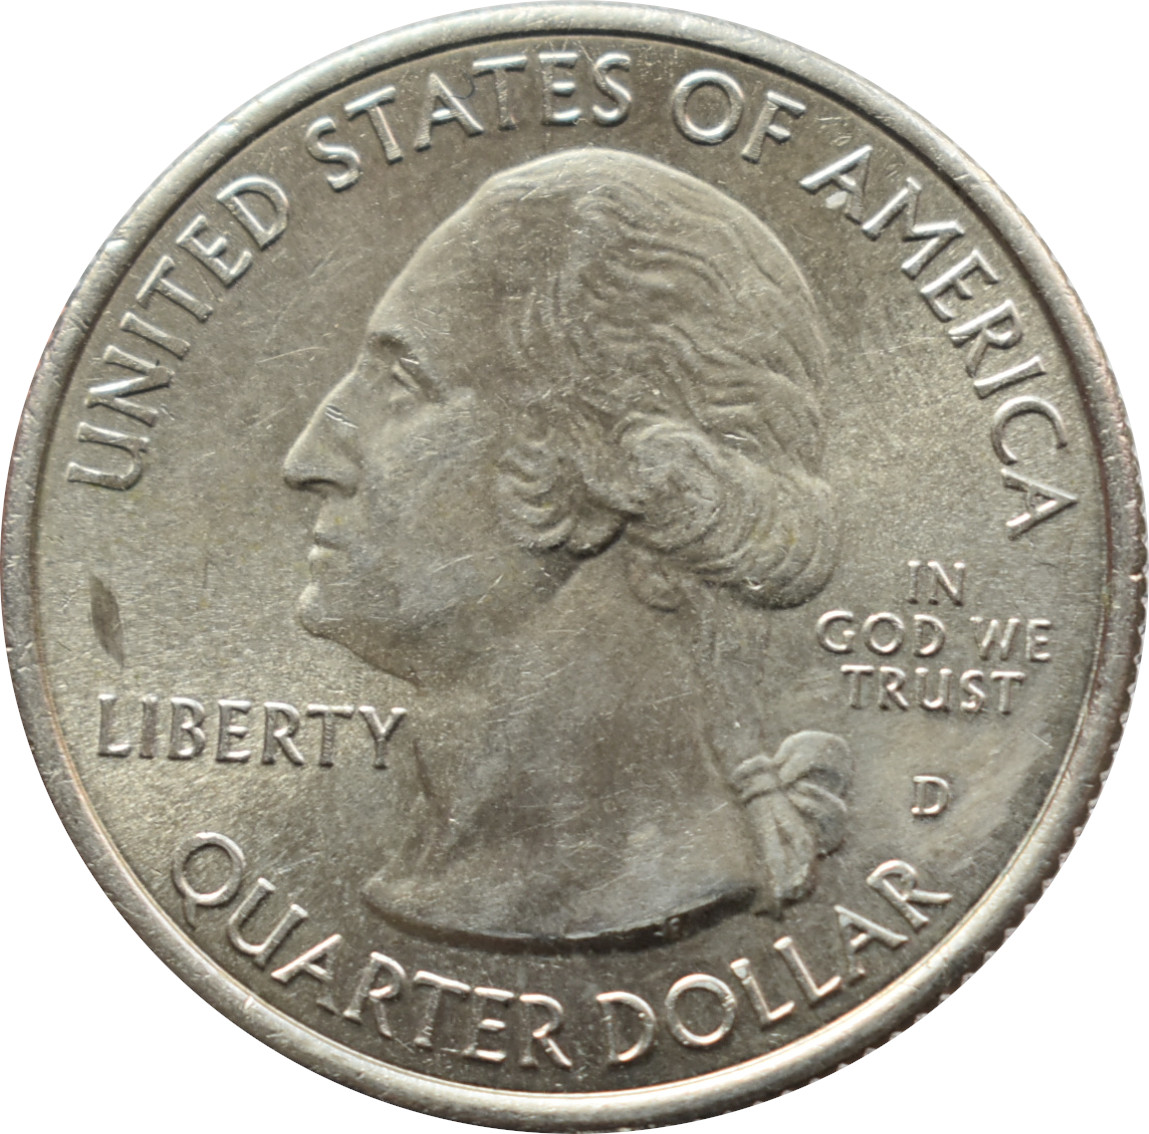 Spojené štáty 1/4 Dollar 2014 Shenandoah